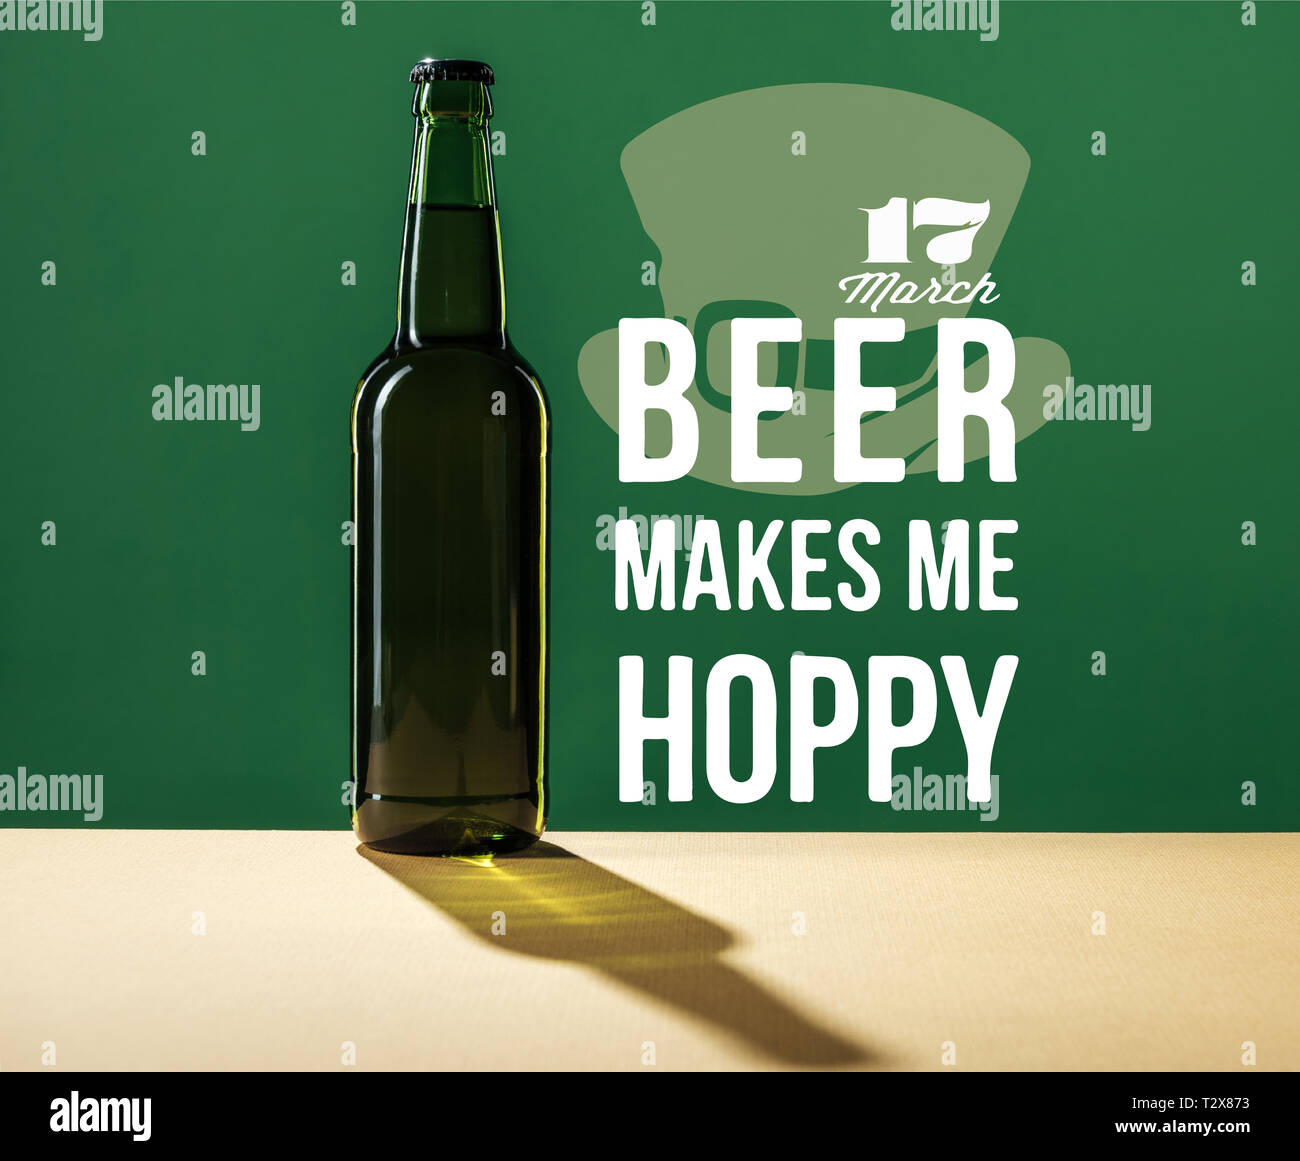 glass beer bottle near beer makes me hoppy lettering on green background Stock Photo